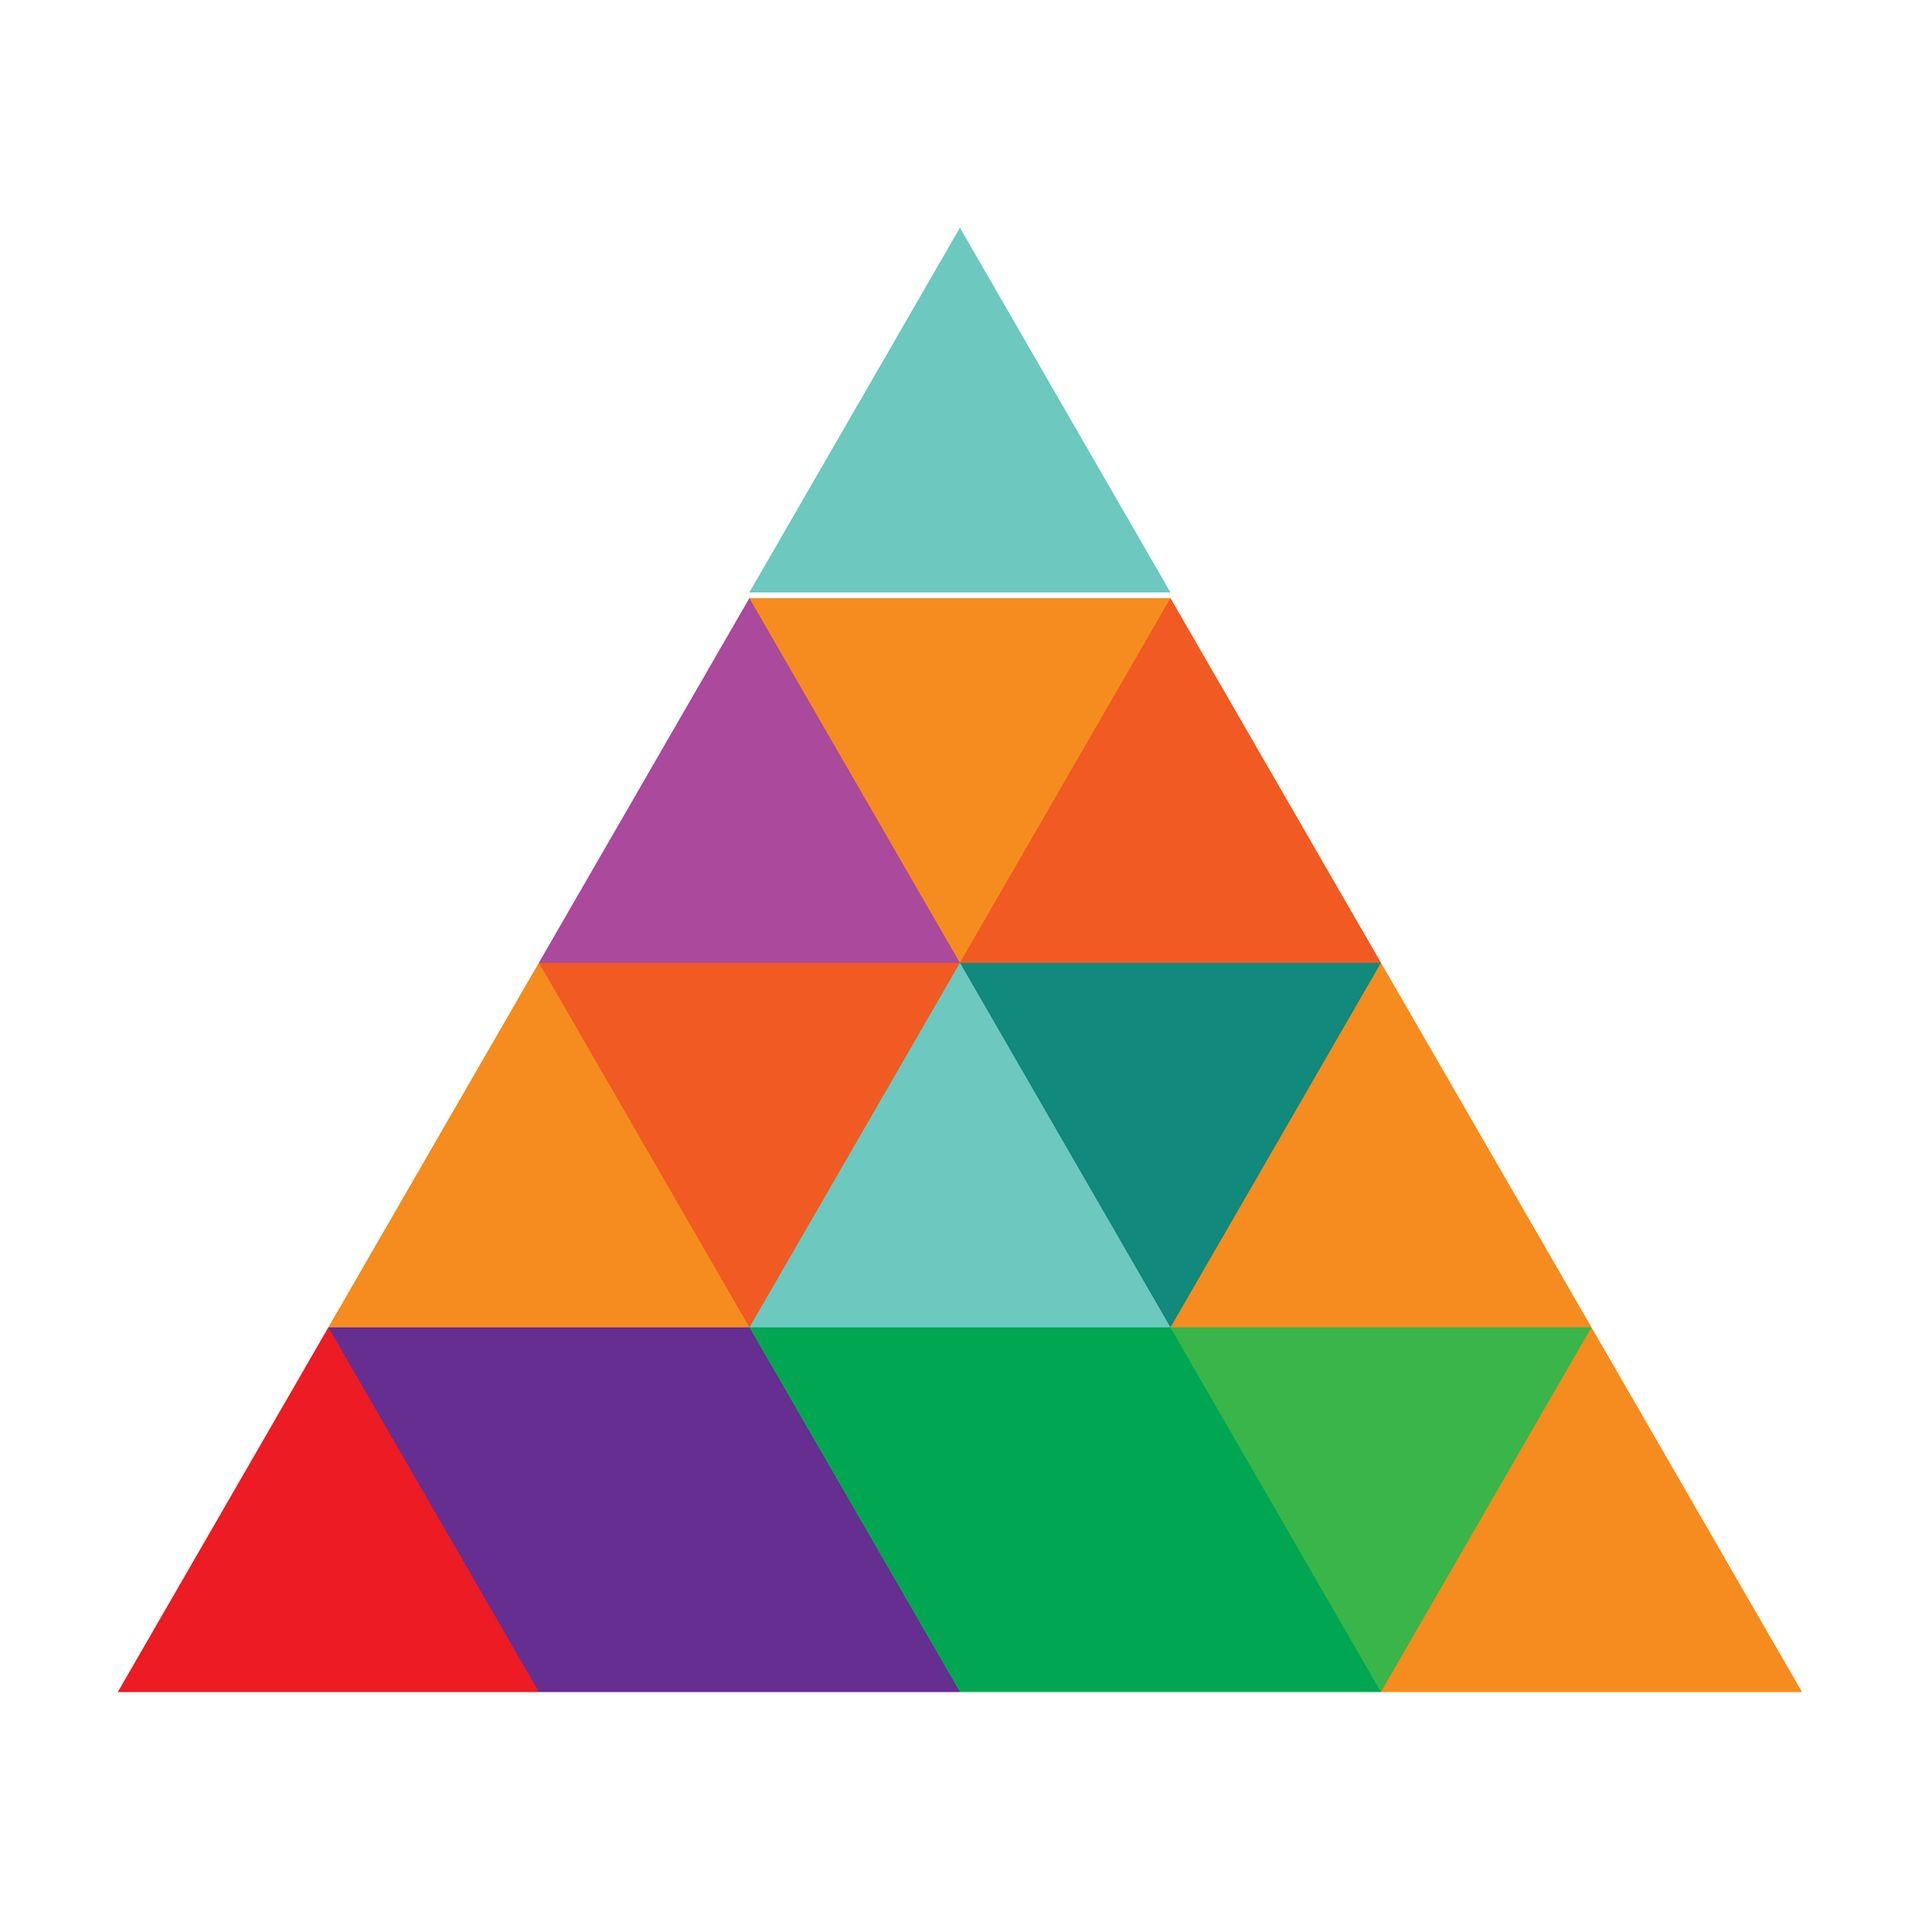 Illustratie van een kleurrijke piramide die in vakjes met verschillende kleuren is opgedeeld ter illustratie van het piramide-principe voor een goed gestructureerde tekst.